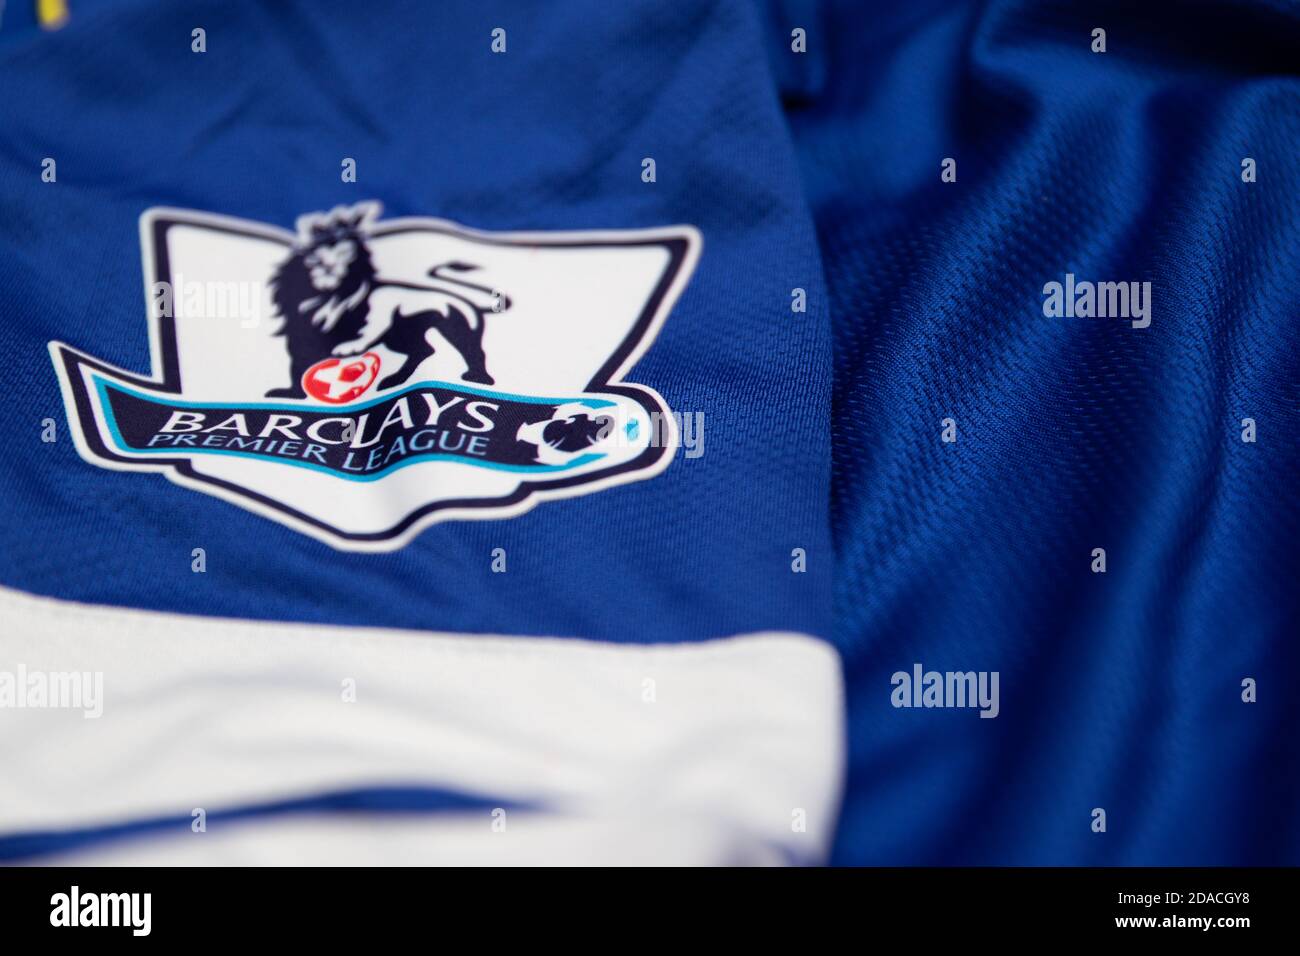 Barclays Premier League Logo mit Löwe und Fußball auf dem Ärmel eines  blauen Everton Fußballtrikots Stockfotografie - Alamy